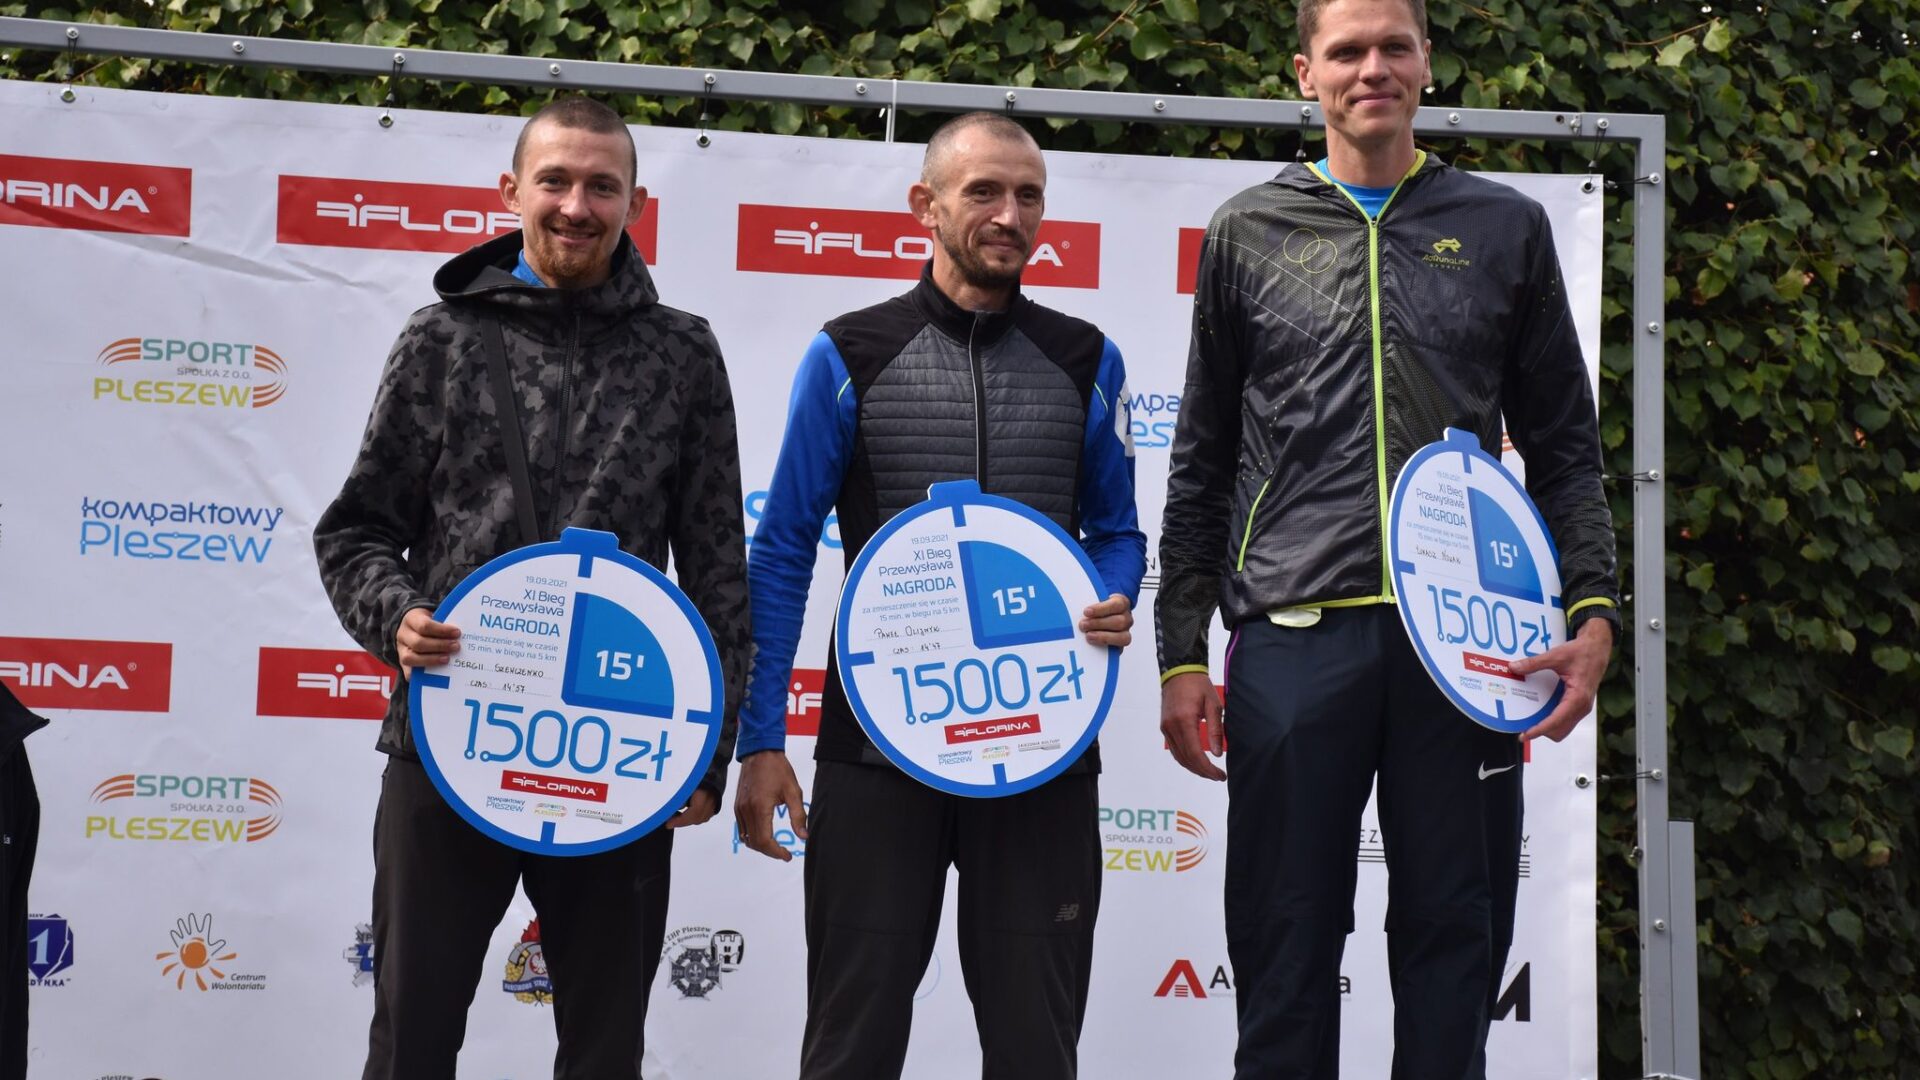 na pierwszym stopniu stoi trójka mężczyzn - zwycięzców Biegu Pzemysława na dystansie 5 km; w ręku trzymają nagrody